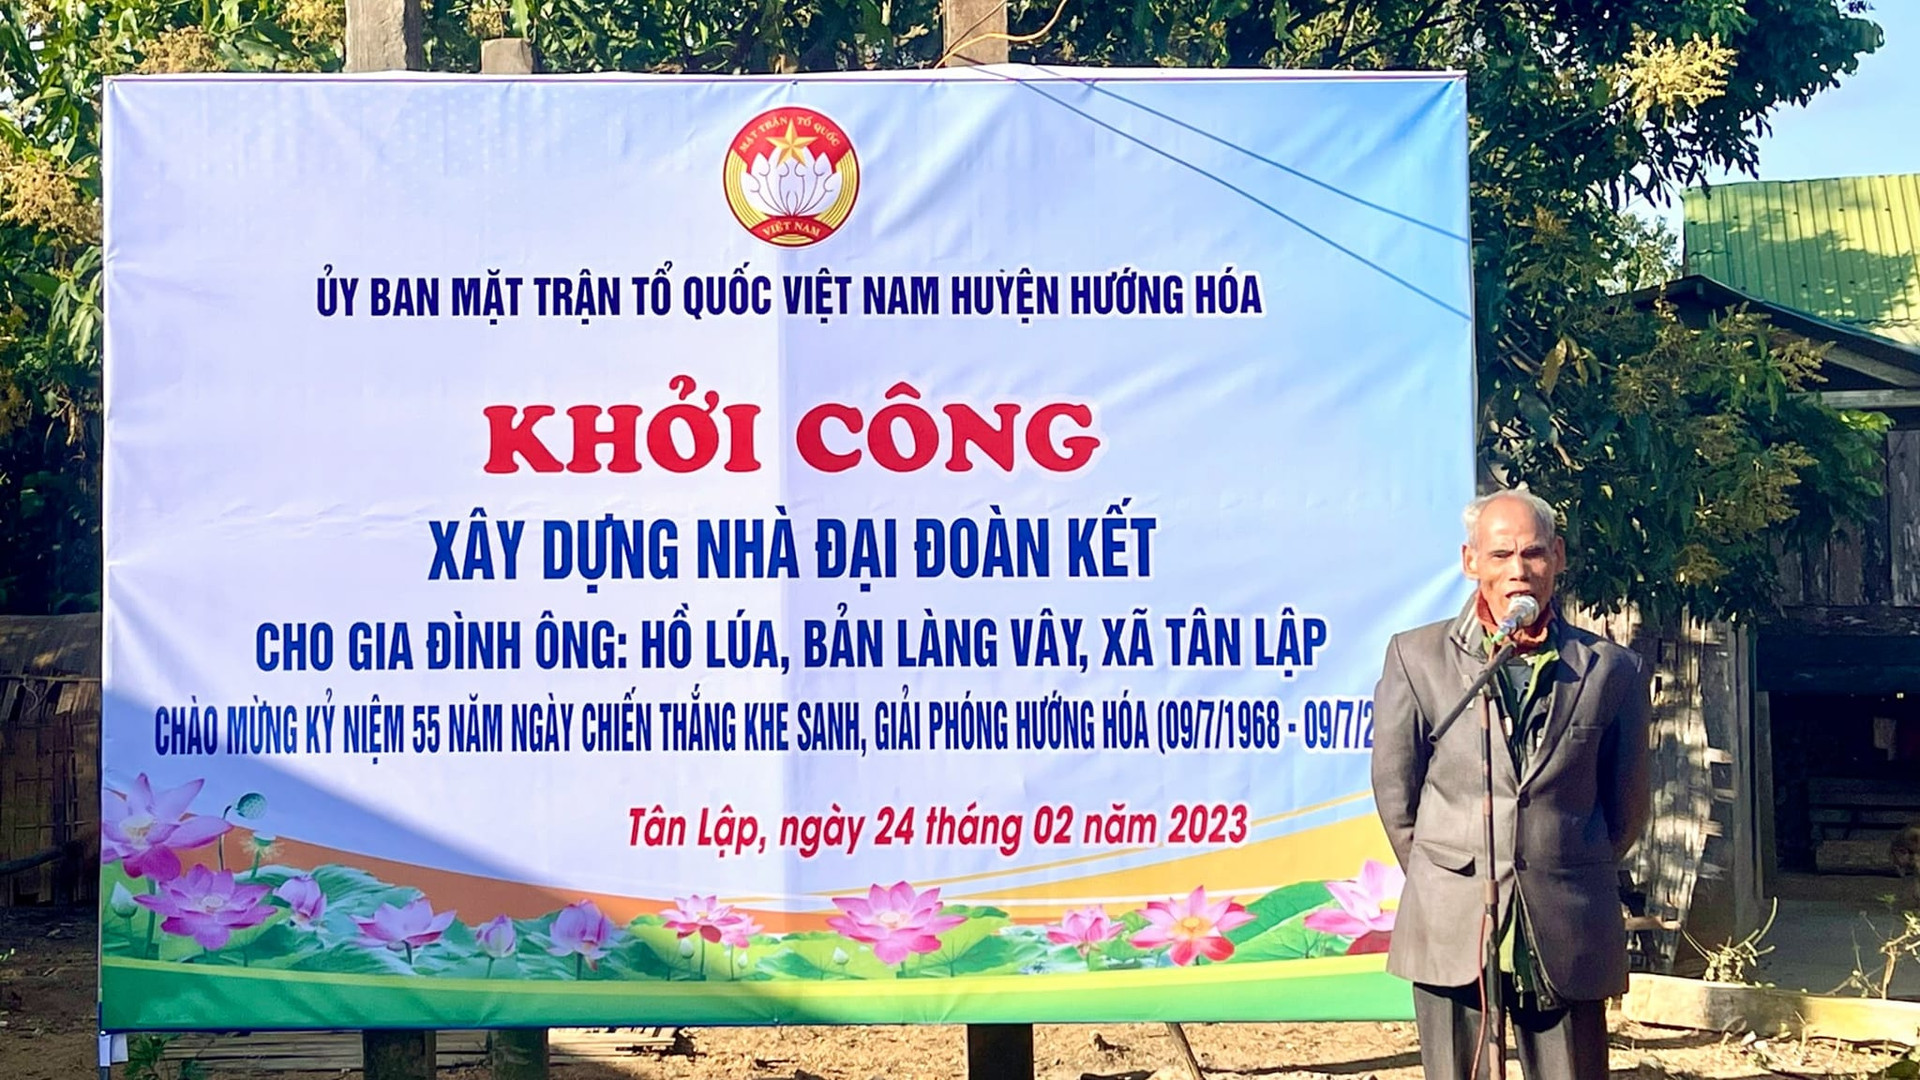 Ủy ban MTTQ Việt Nam huyện Hướng Hóa tổ chức lễ khởi công xây dựng nhà Đại đoàn kết cho gia đình ông Hồ Lúa.